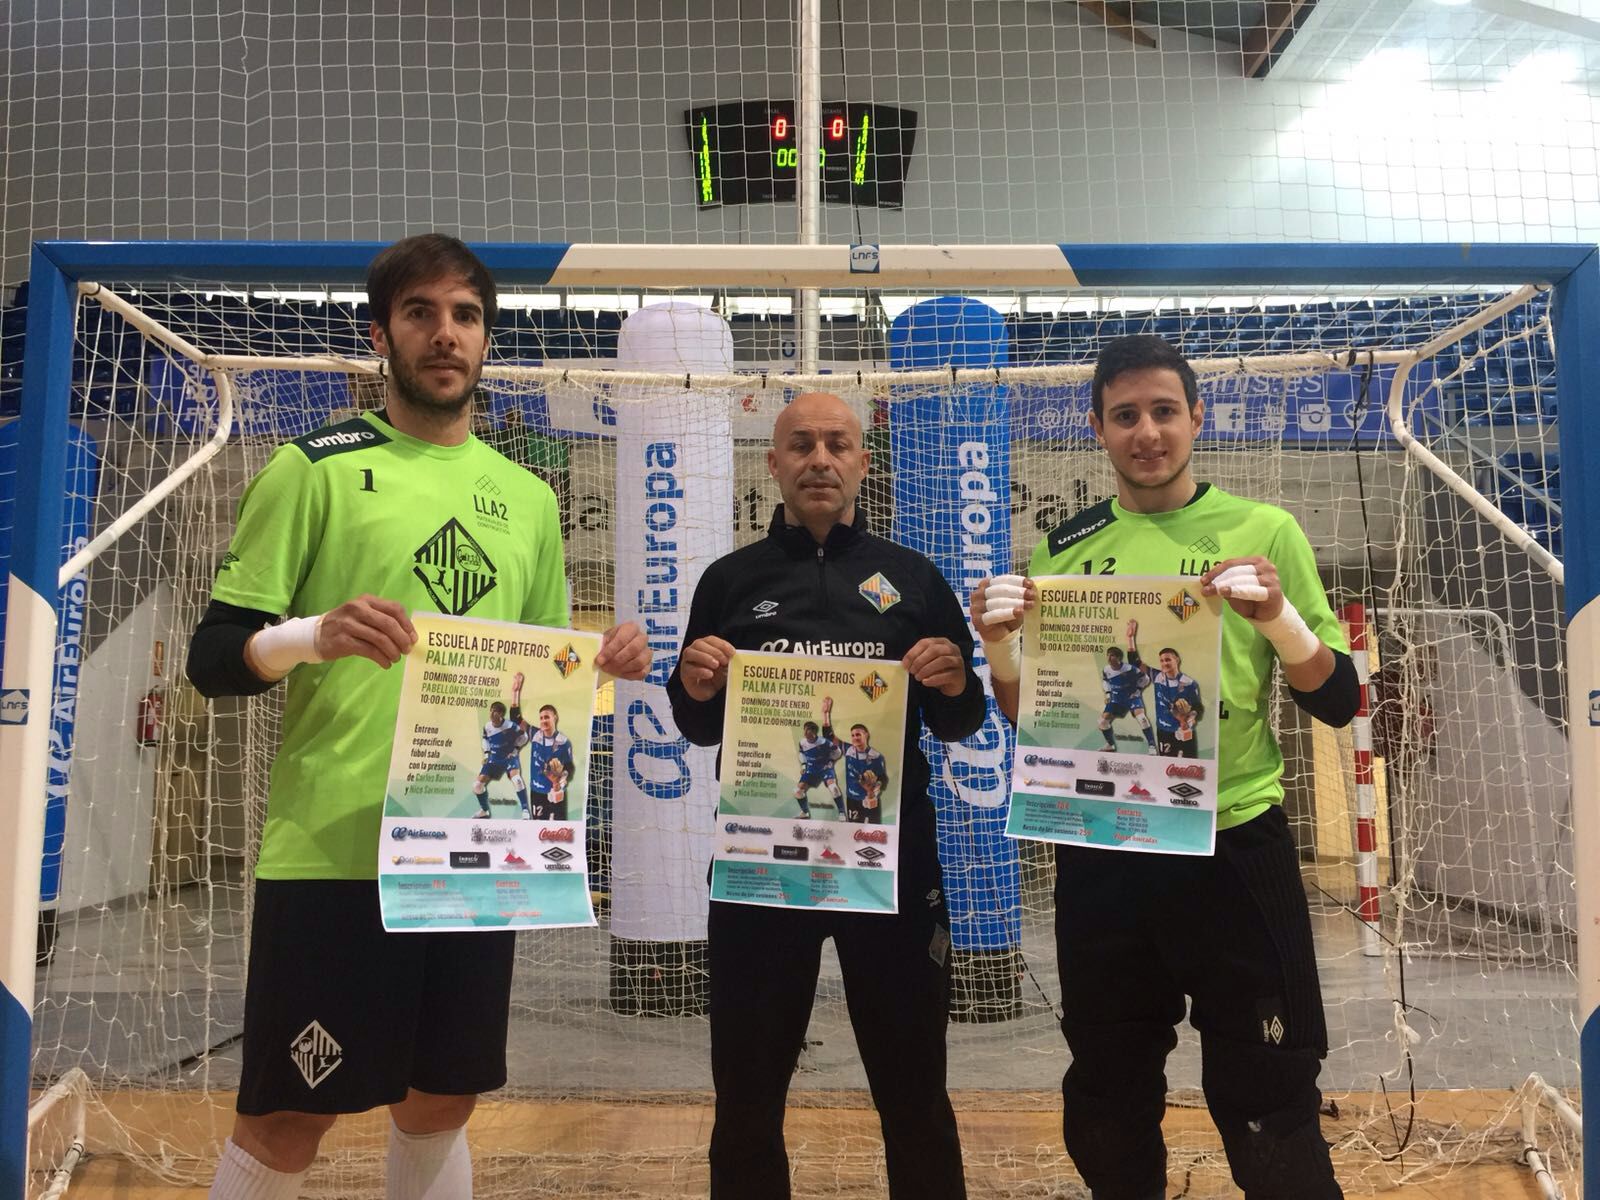 Carlos Barrón, Juanito y Joselito posan con el cartel de la escuela de porteros del club (3)